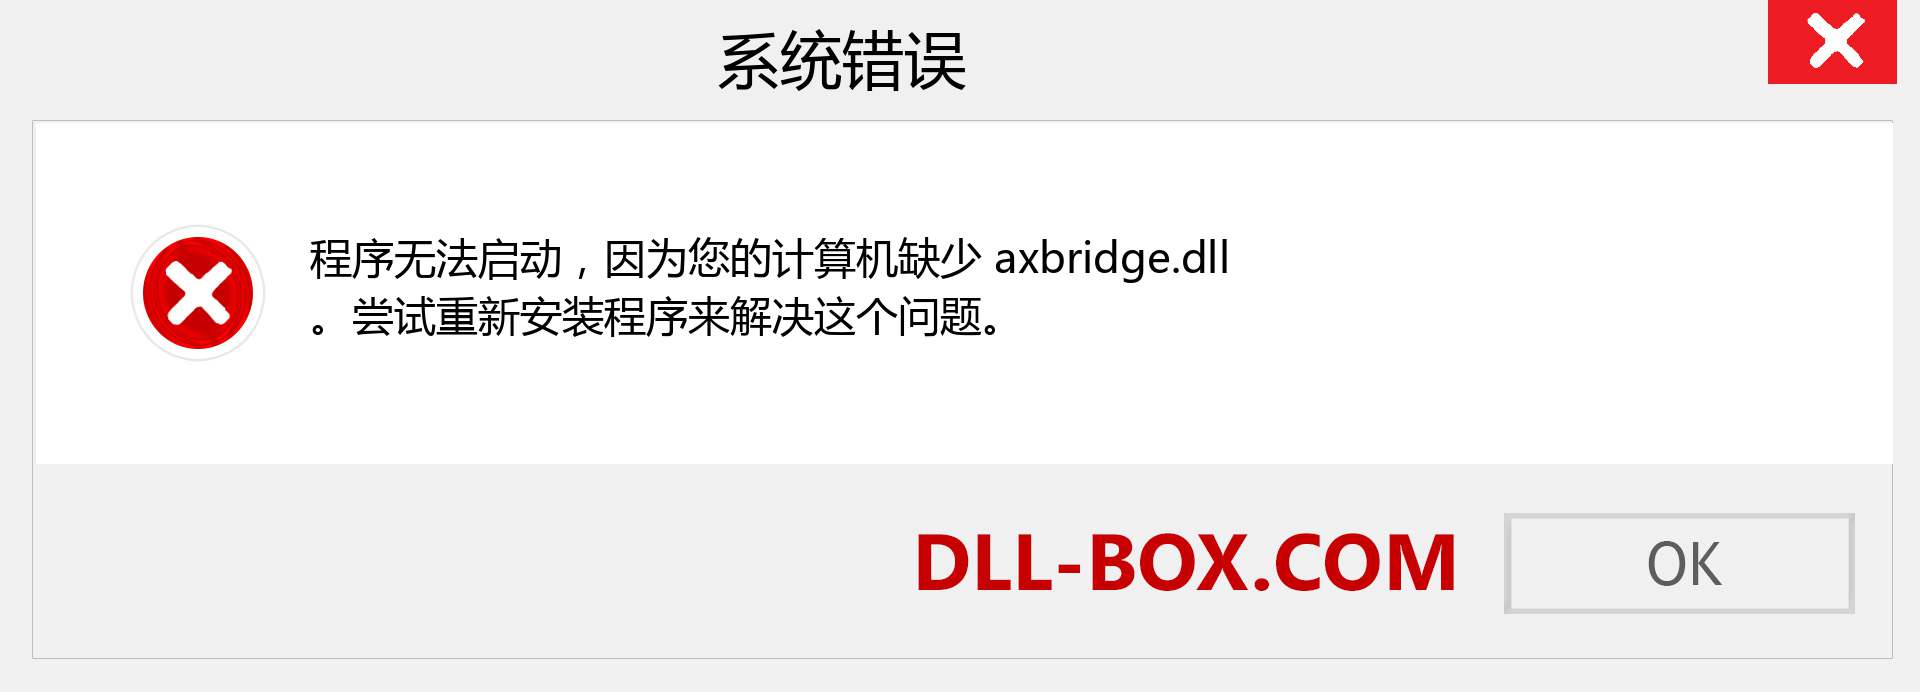 axbridge.dll 文件丢失？。 适用于 Windows 7、8、10 的下载 - 修复 Windows、照片、图像上的 axbridge dll 丢失错误